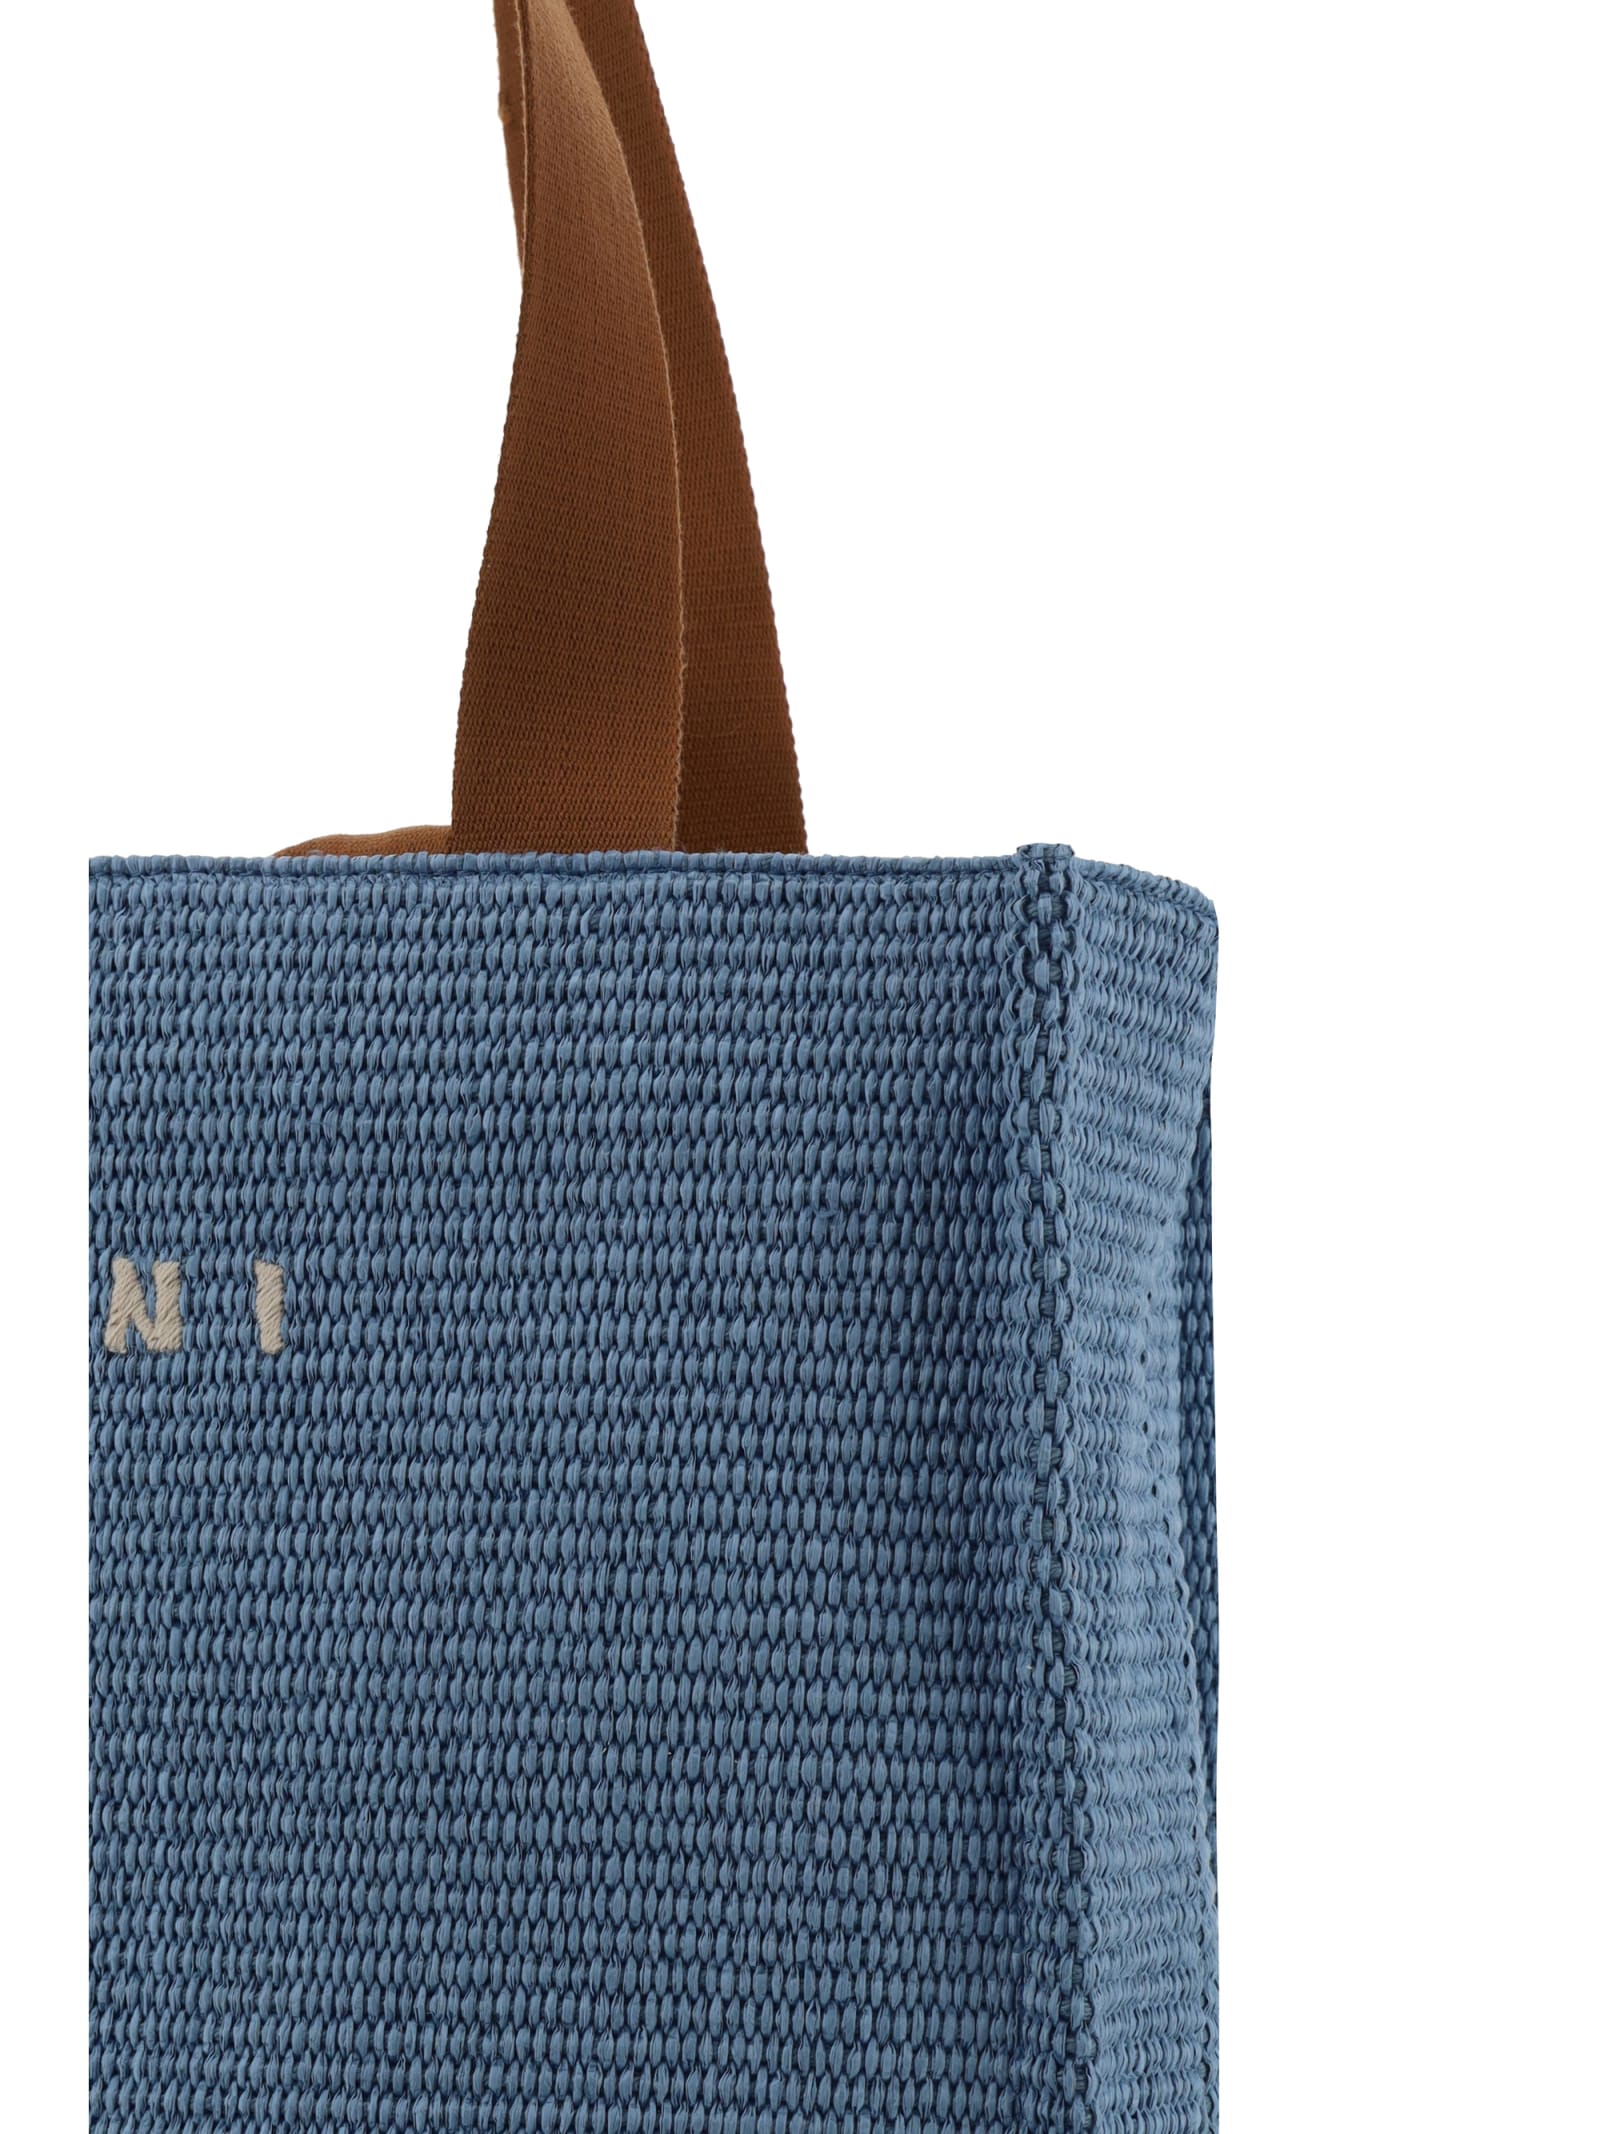 Shop Marni Handbag In Gnawed Blue